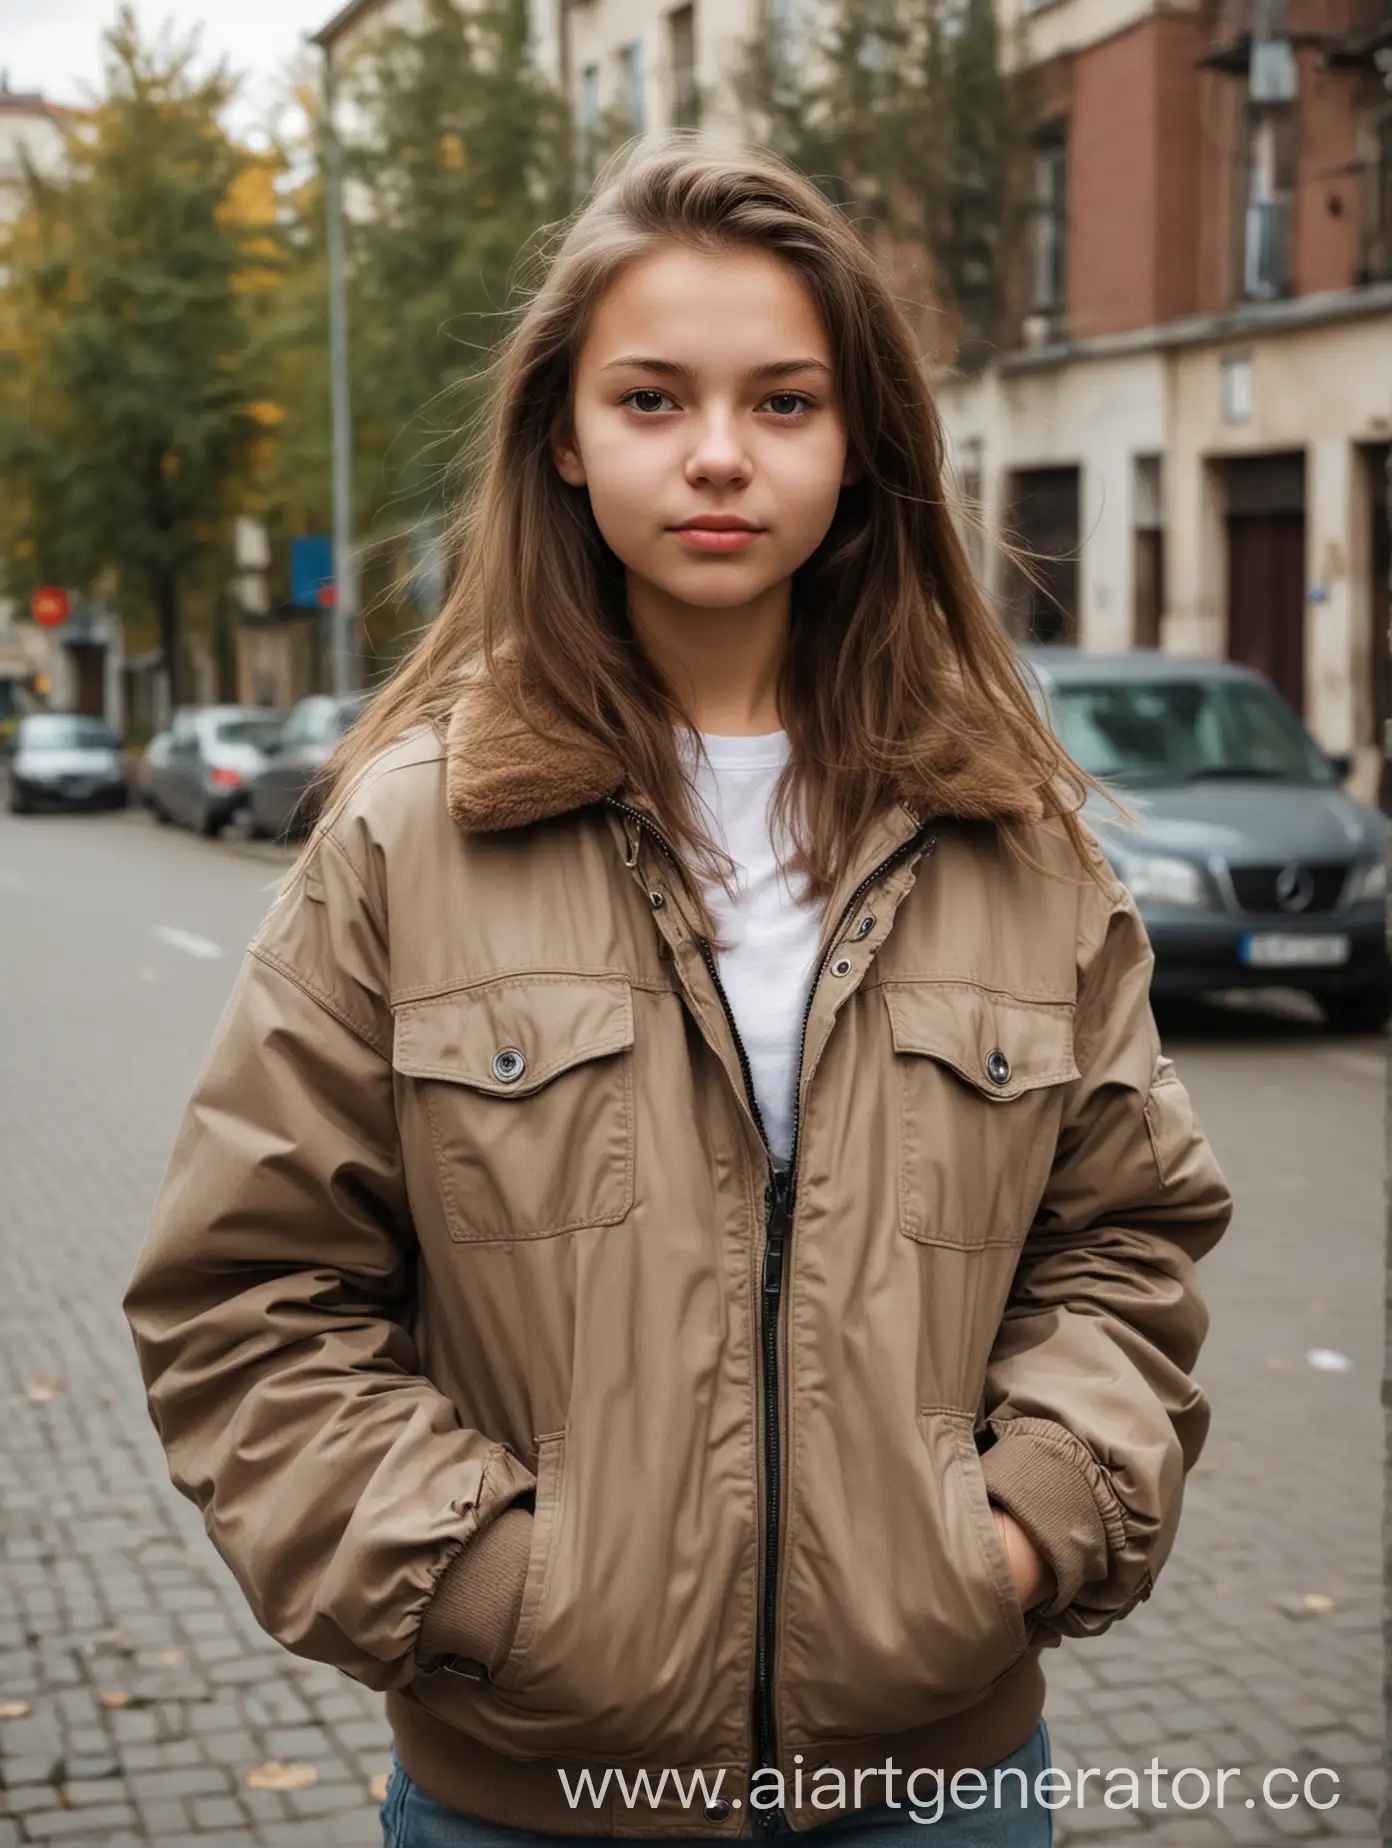 фото девушки подростка оффница русская в кофте